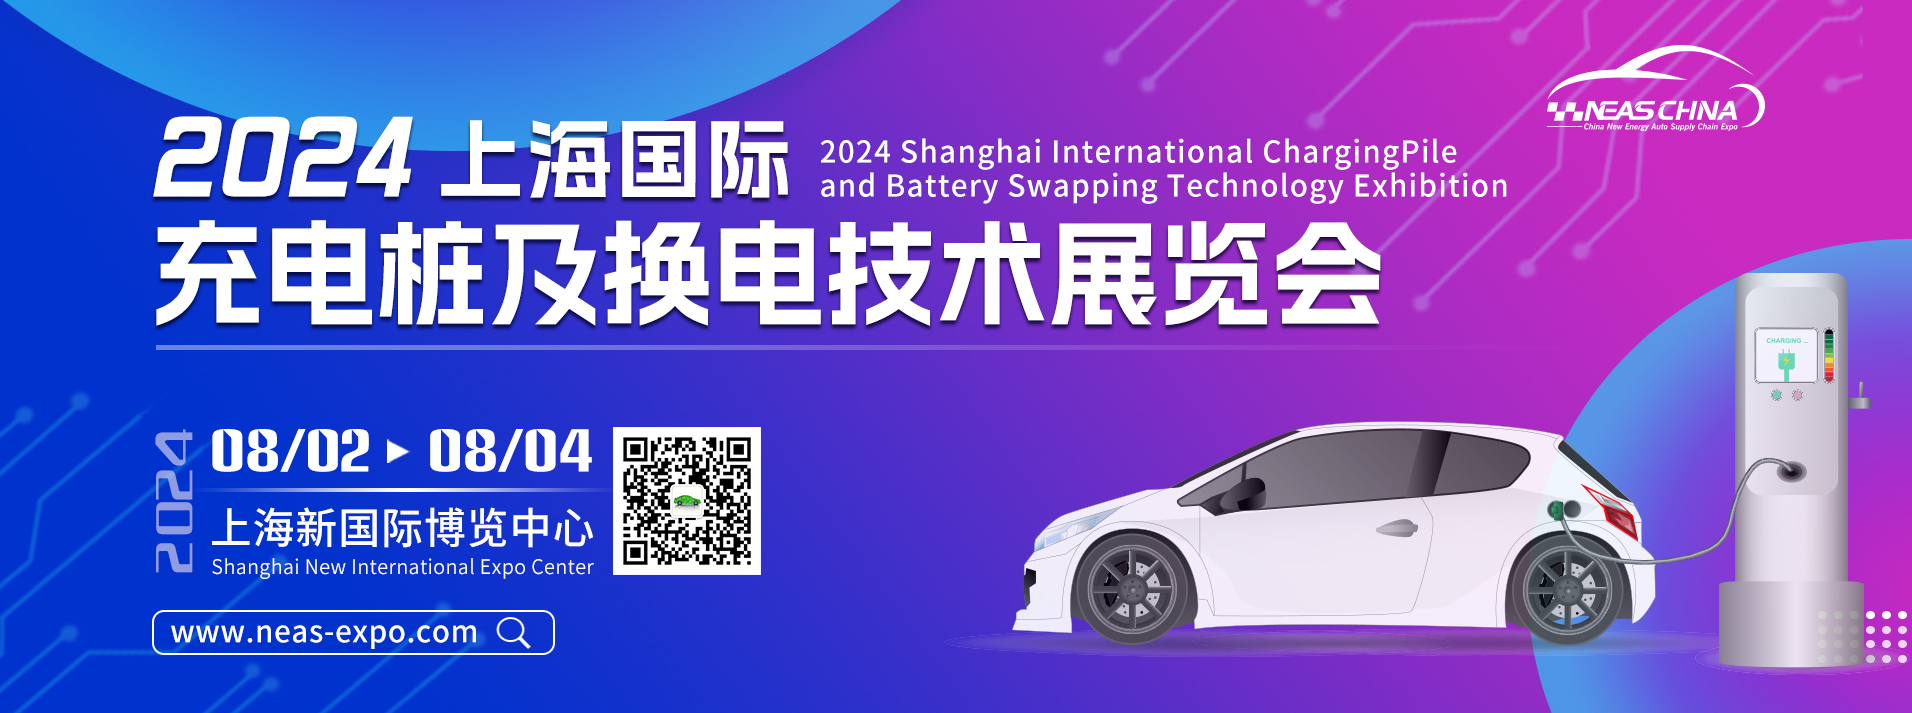 2024中国上海国际充电桩及换电技术展览会